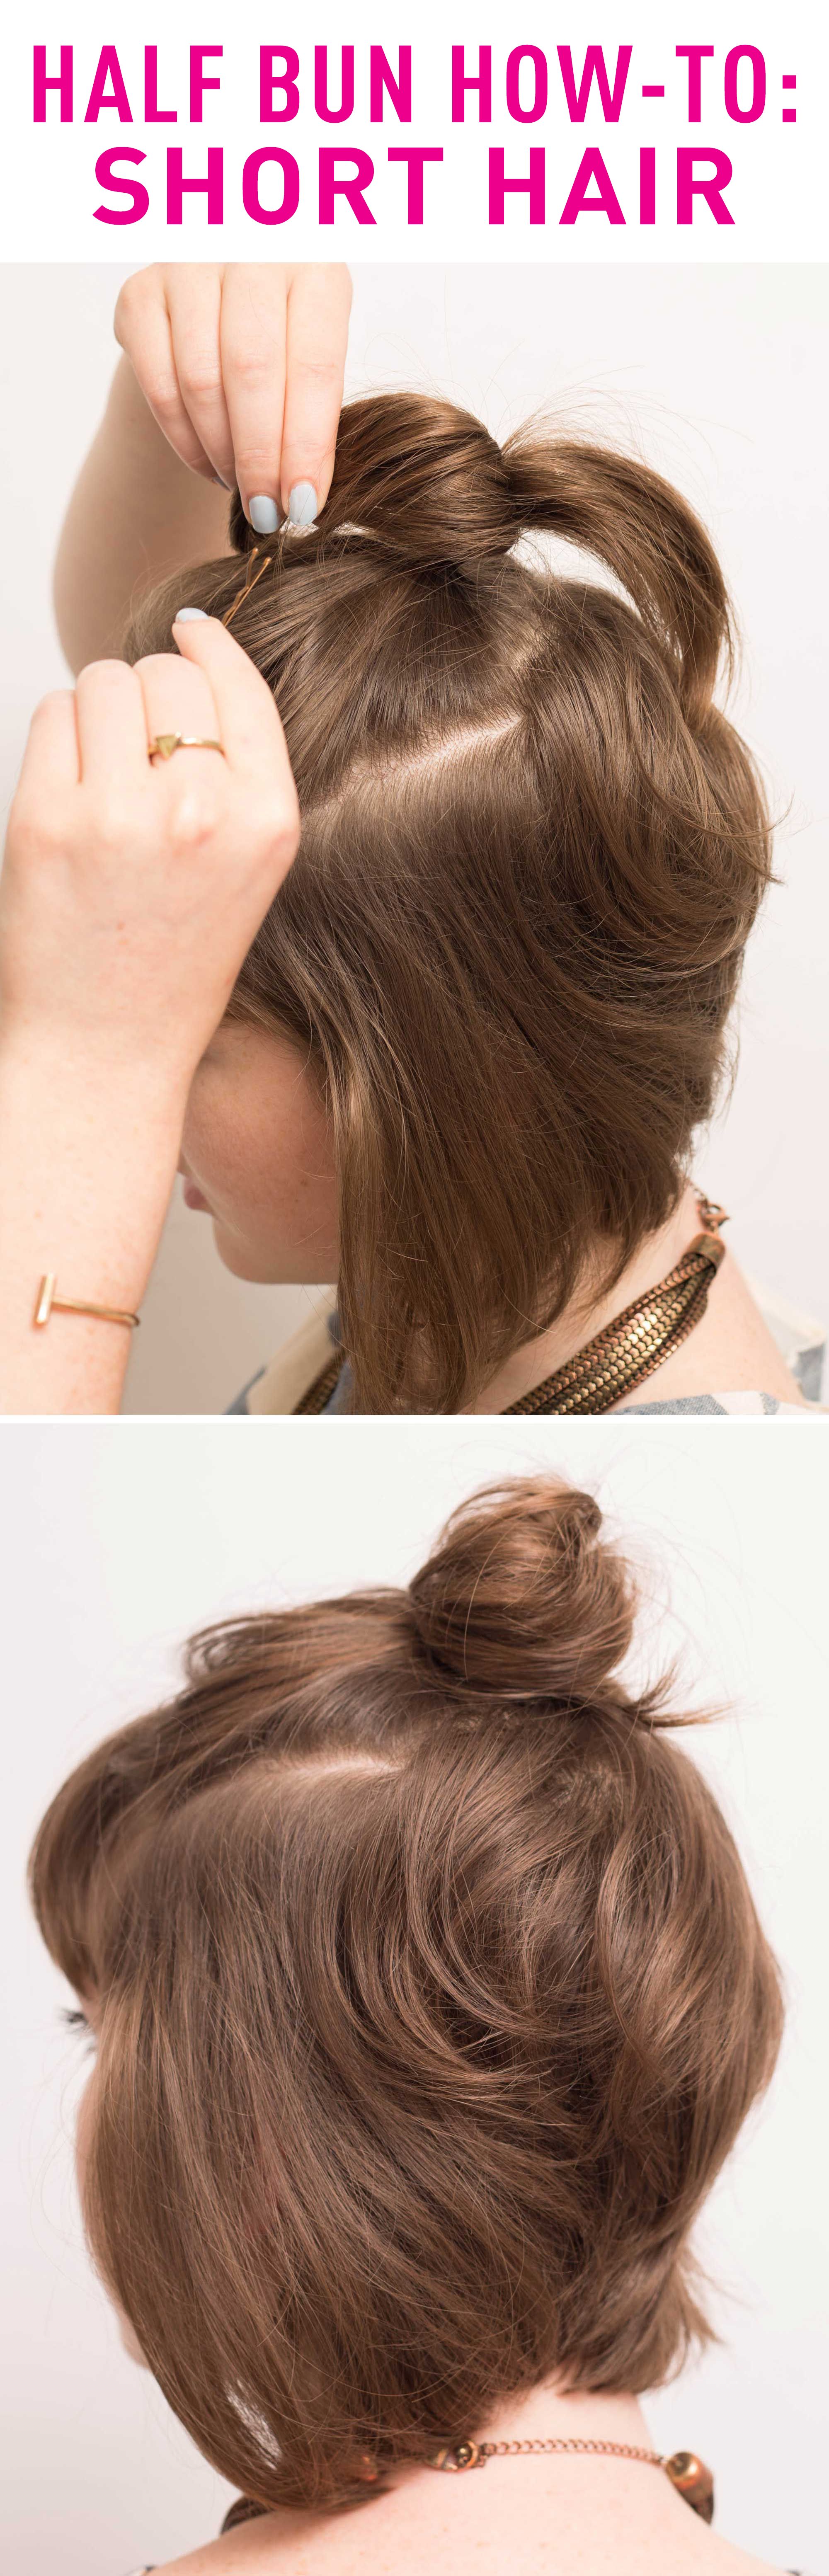 HAIR TUTORIAL: ROLLED BUN FOR SHORT HAIR | Laura Bradshaw - YouTube